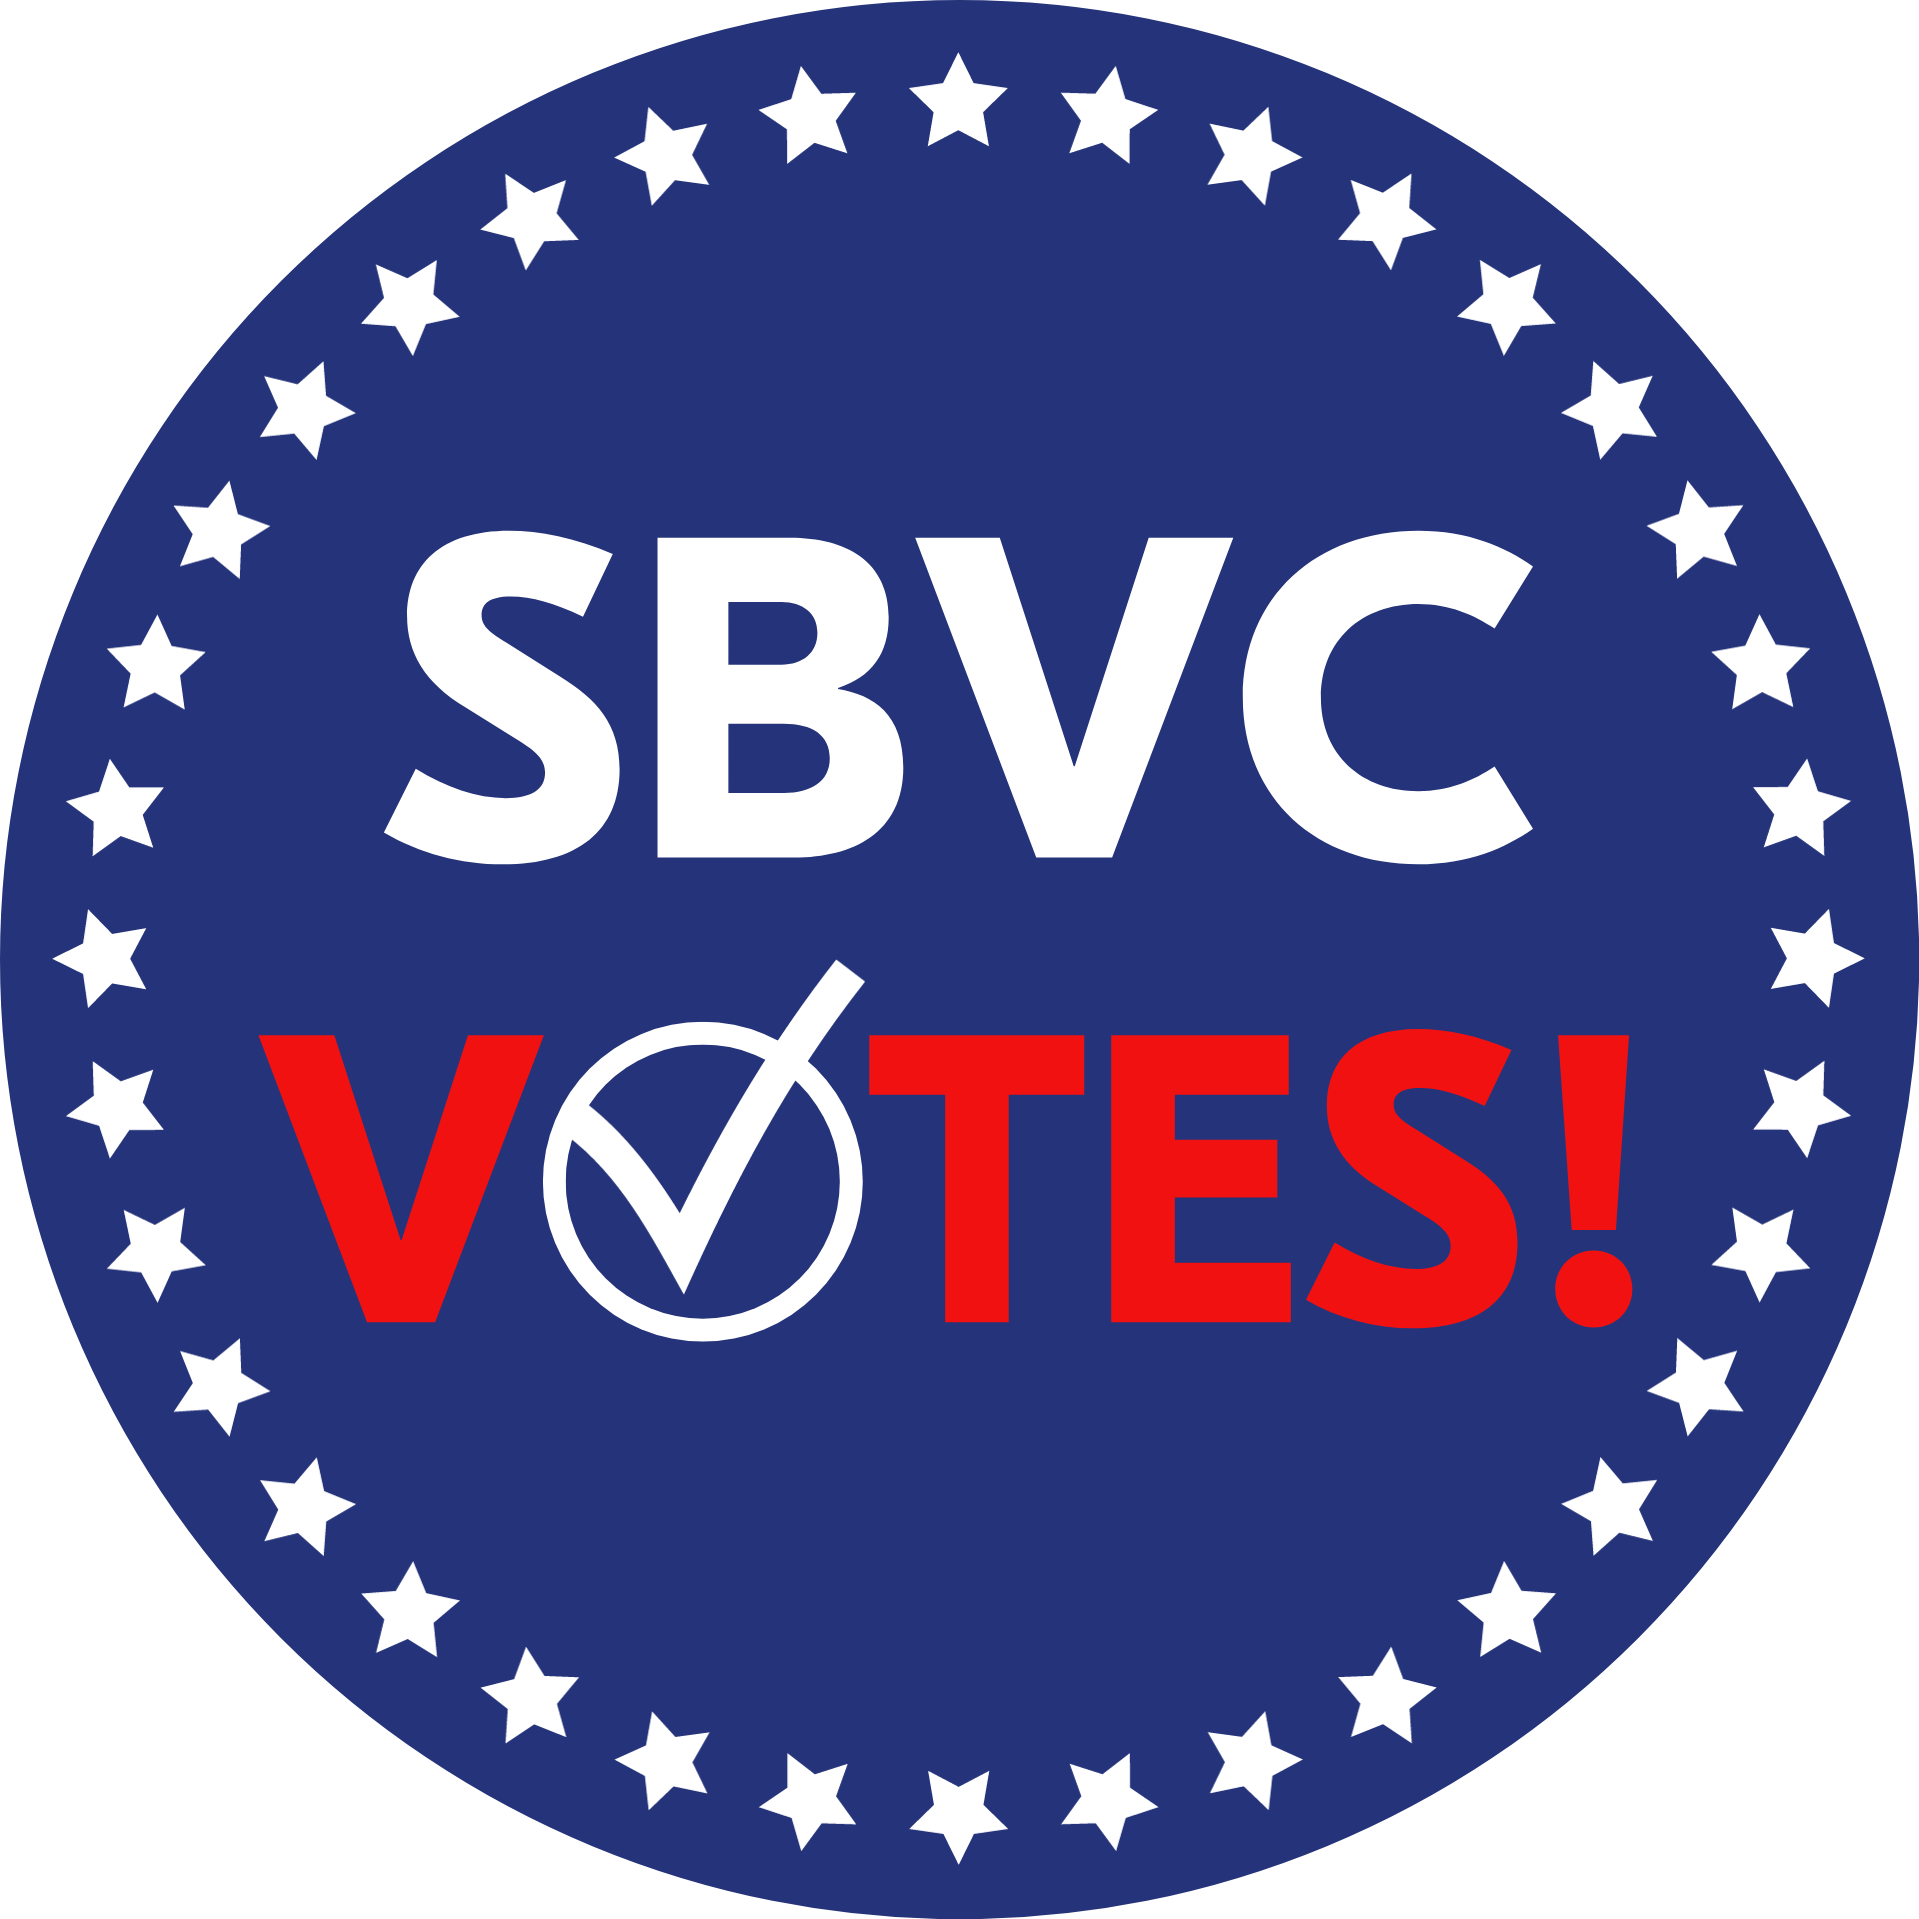 SBVC Votes logo